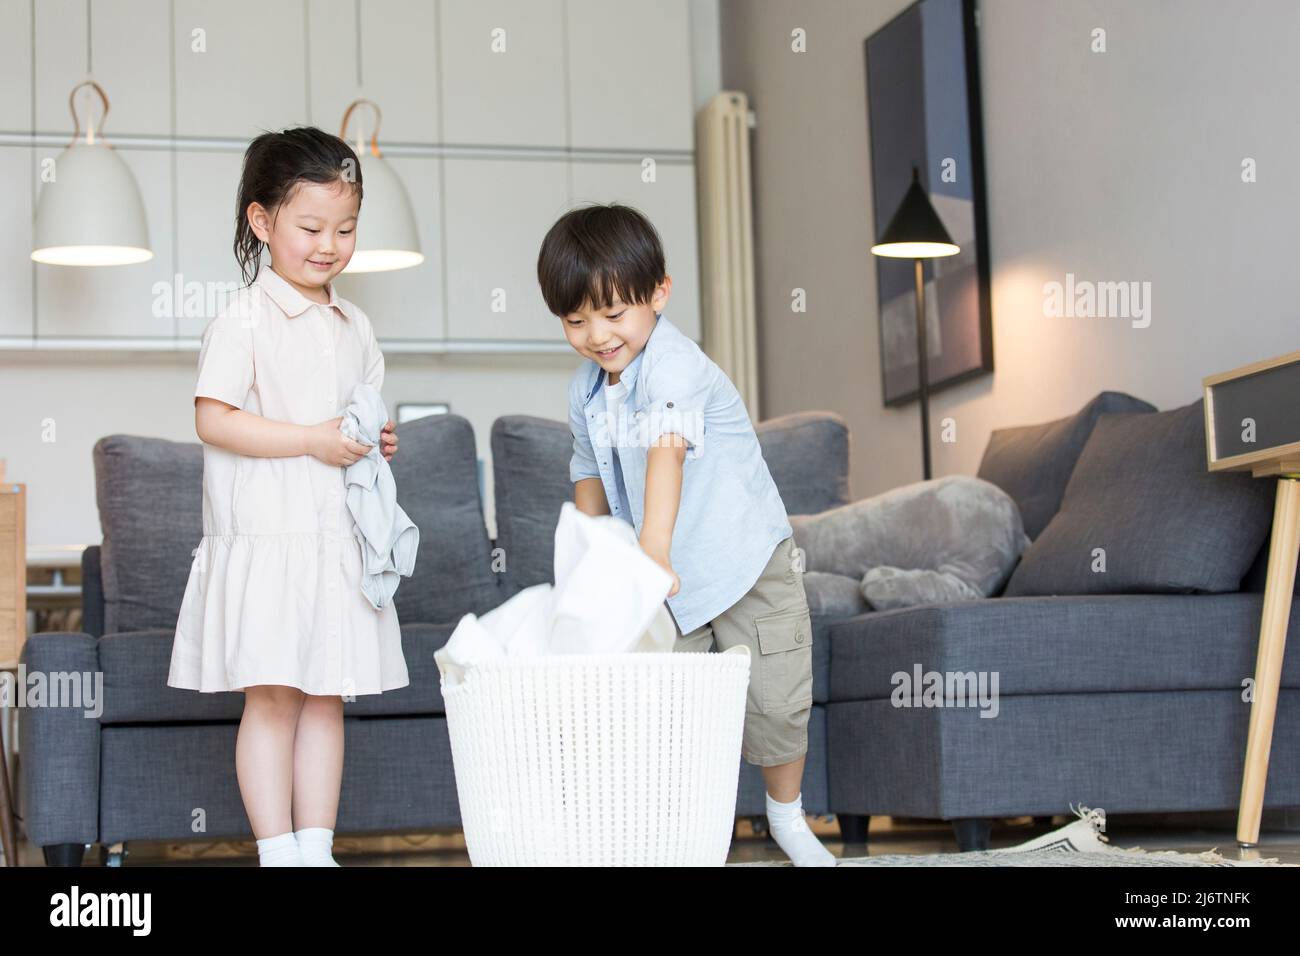 Auf dem Sofa im Wohnzimmer konkurrieren die beiden Geschwister, um die zu waschenden Kleider in den Wäschekorb zu legen - Stock photo Stockfoto